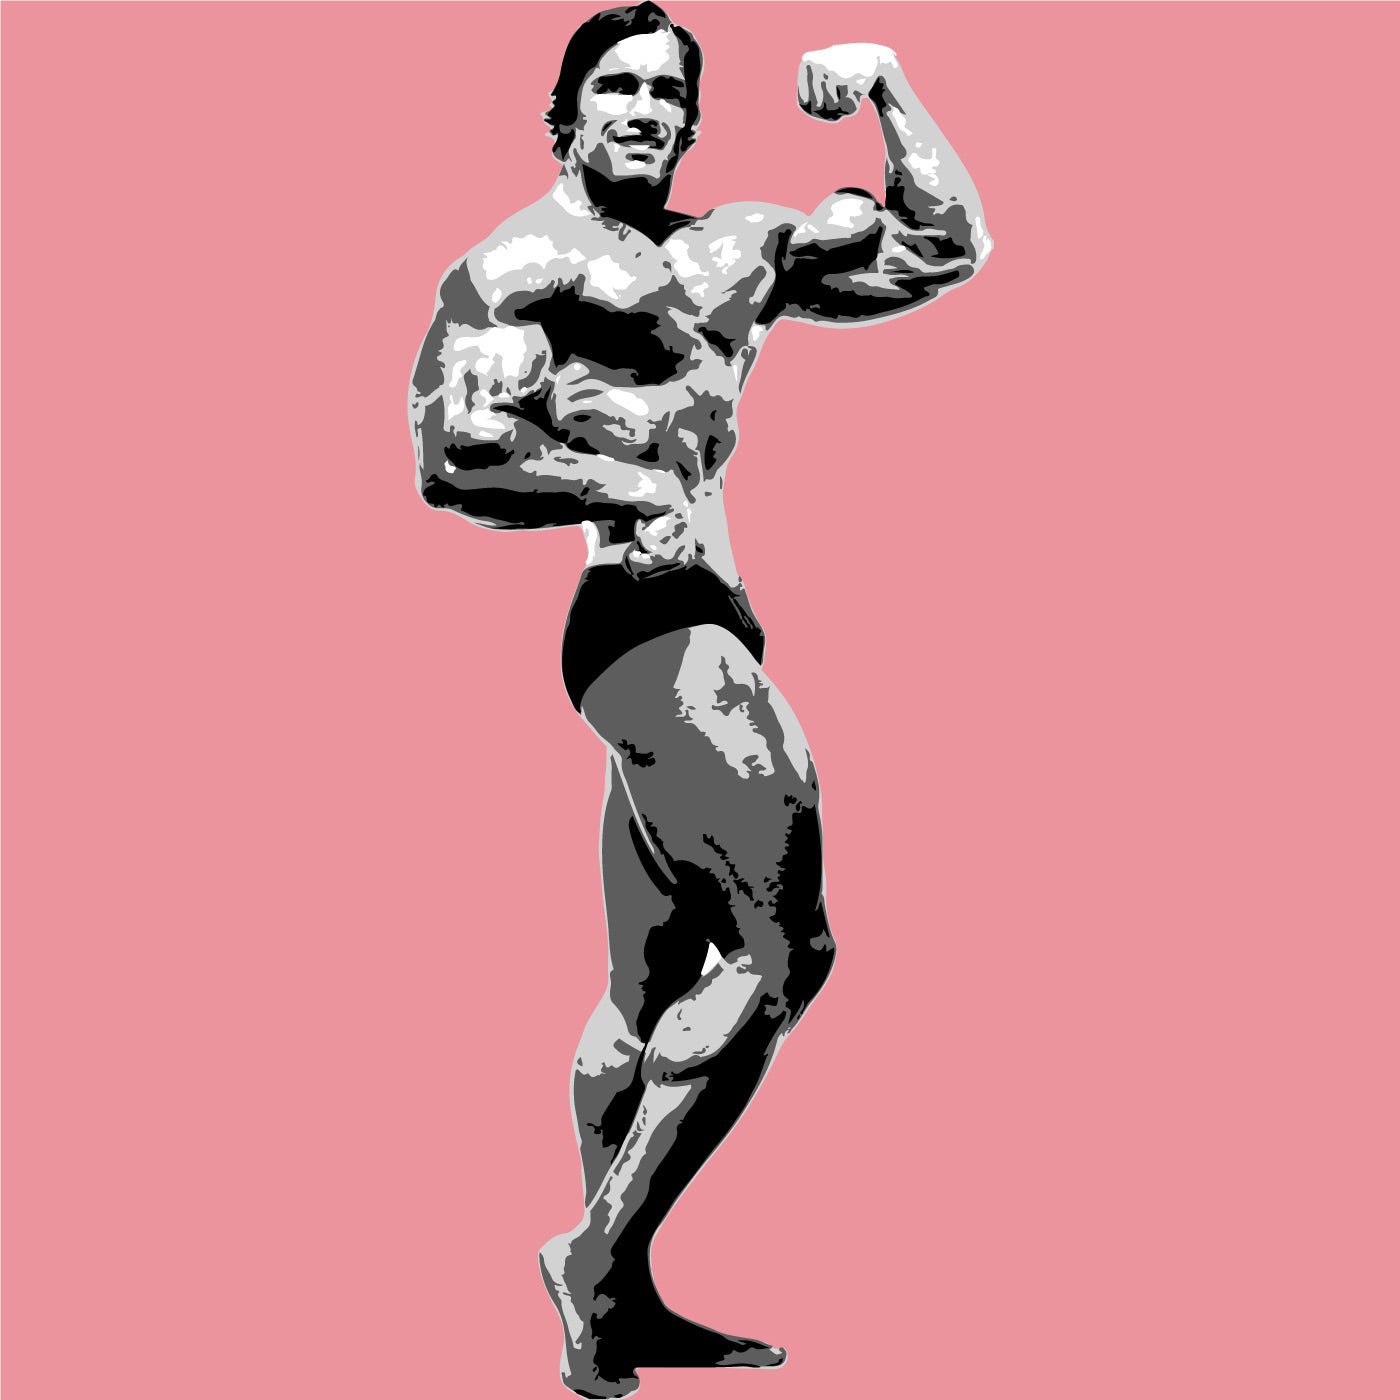 Conjunto de plantillas de capas "culturismo" de Arnold Schwarzenegger